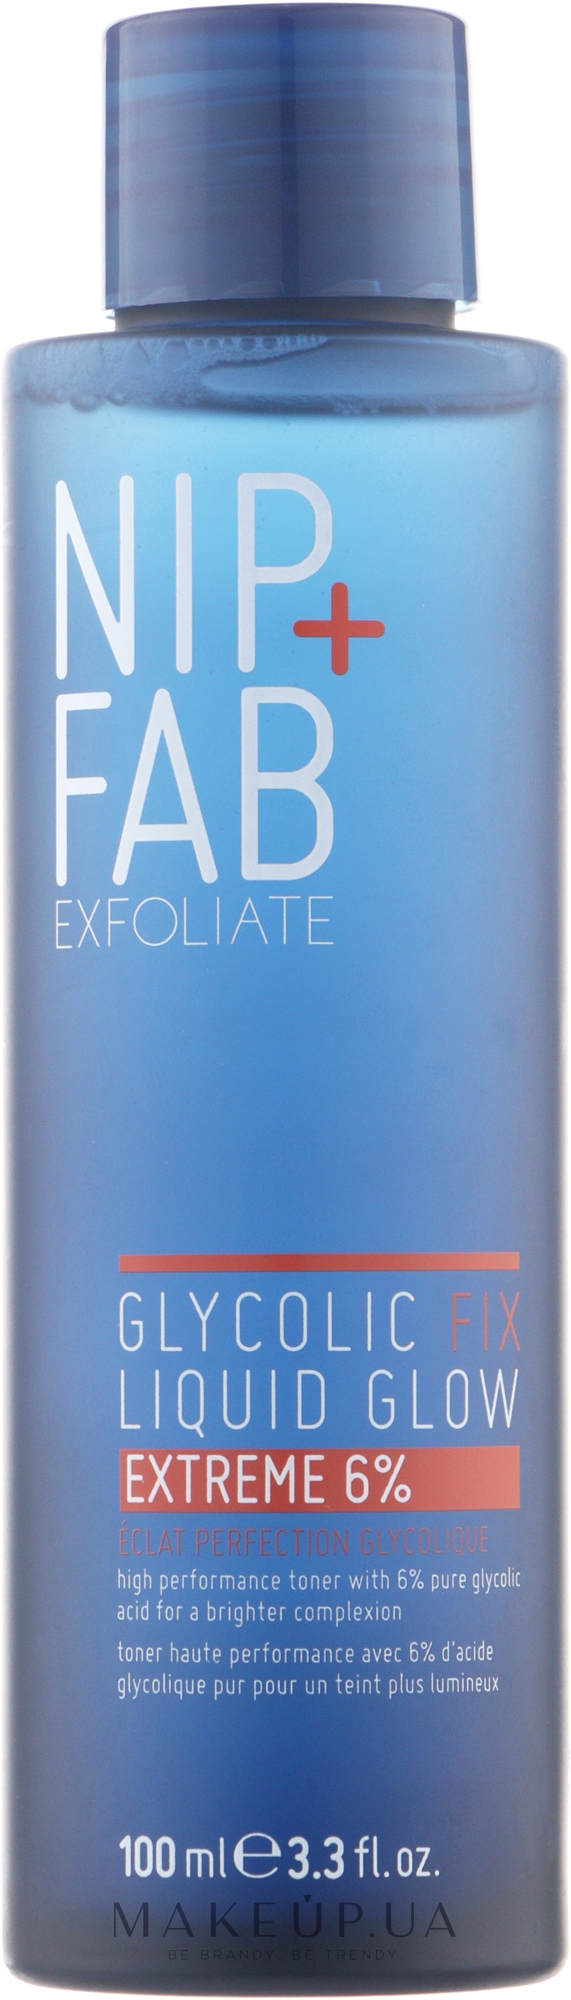 Рідкий відлущувальний засіб для обличчя - NIP + FAB Glycolic Fix Liquid Glow 6% — фото 100ml